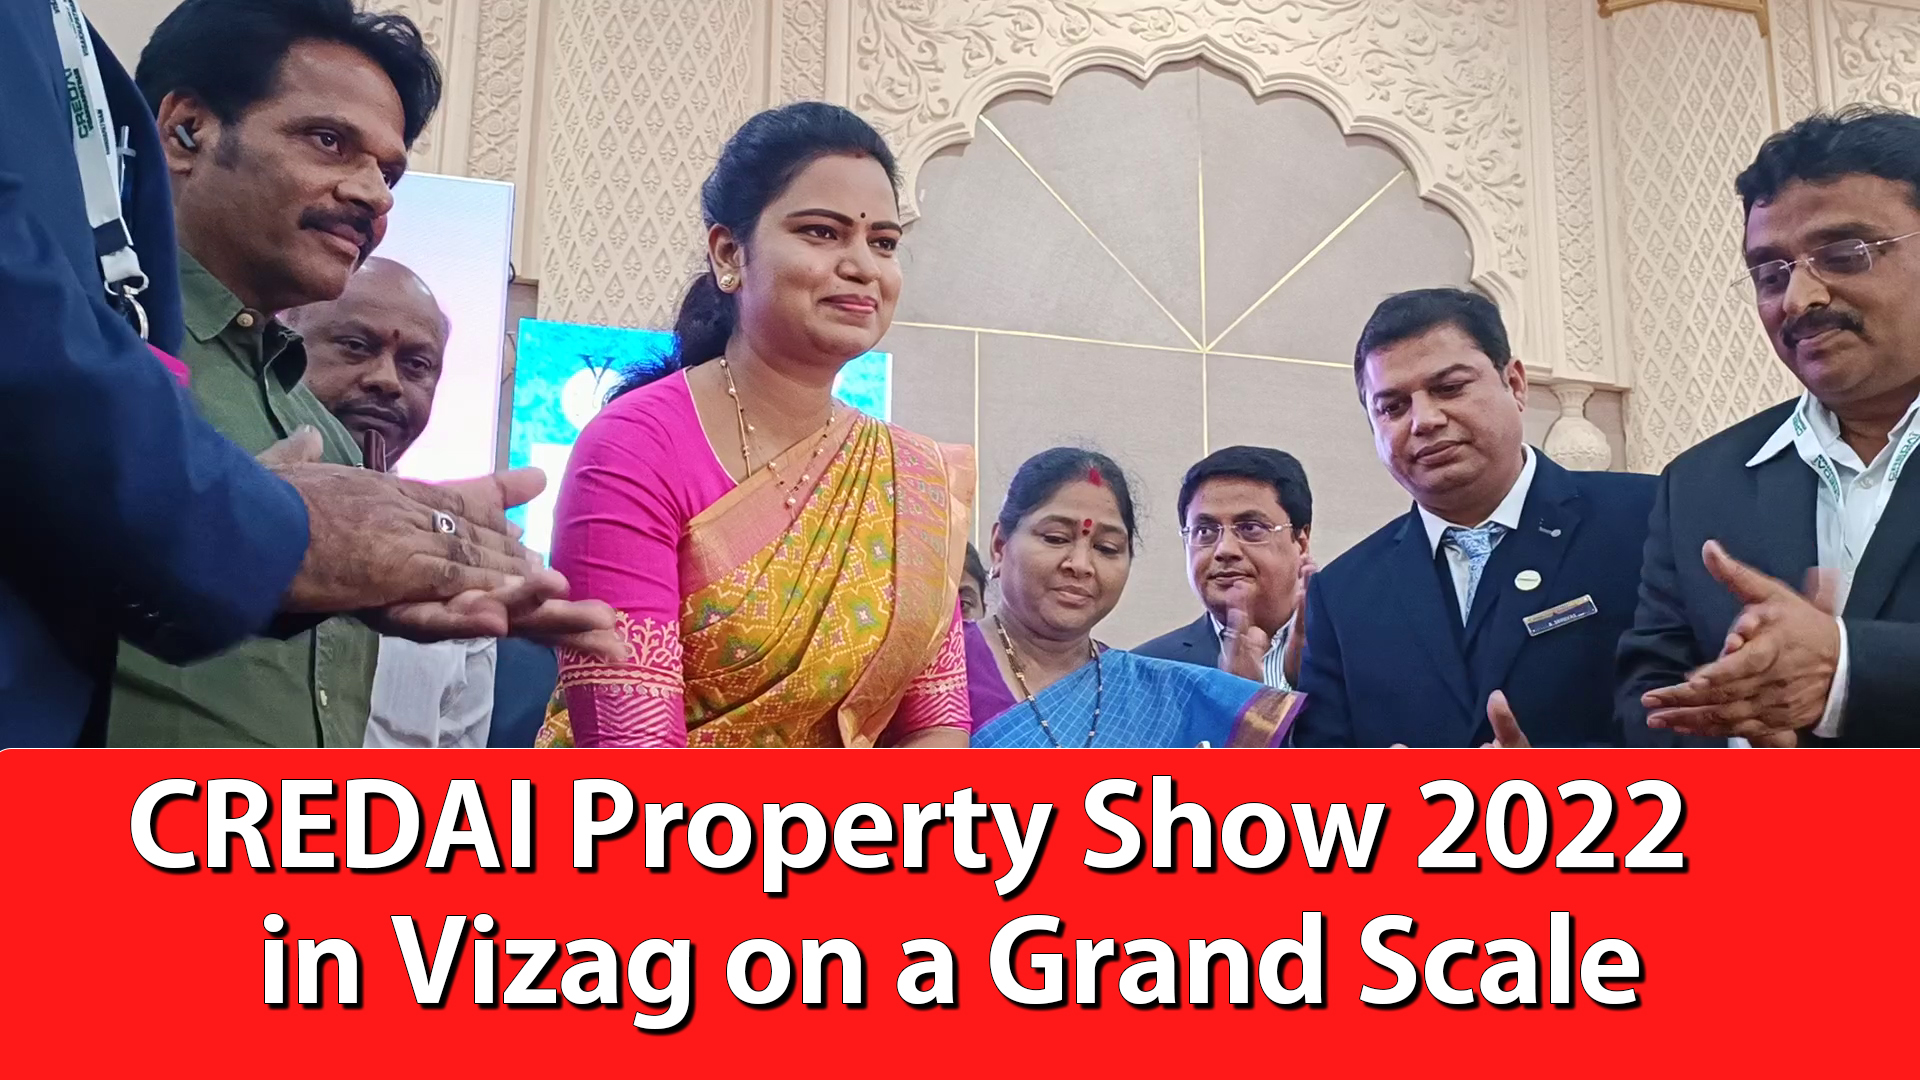 CREDAI Property Show 2022 in Vizag on a Grand Scale |@hellovizag